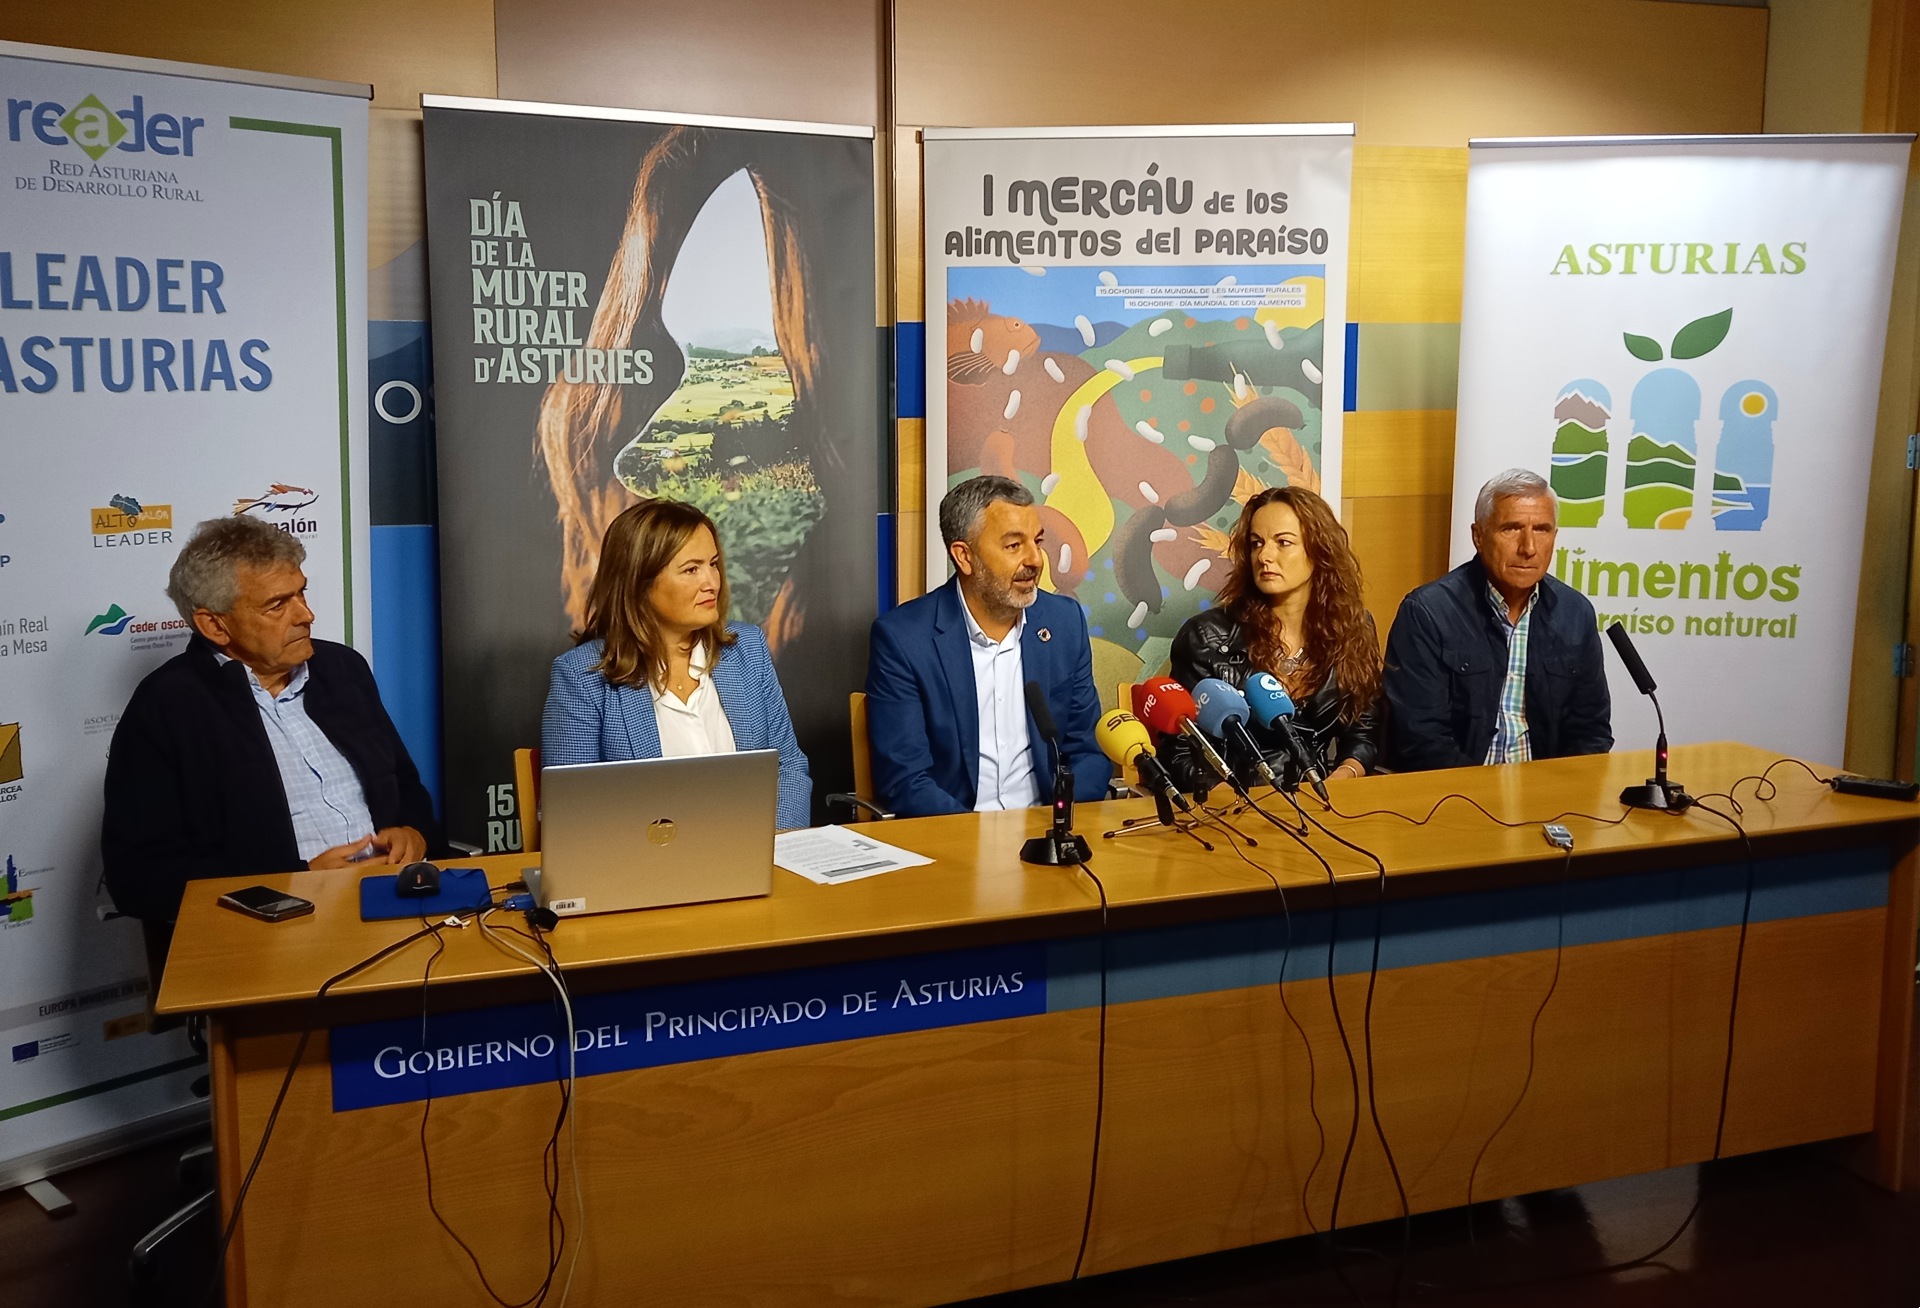 Imagen - El Gobierno de Asturias y Reader celebrarán en Sobrescobio los actos del Día Internacional de las Mujeres Rurales